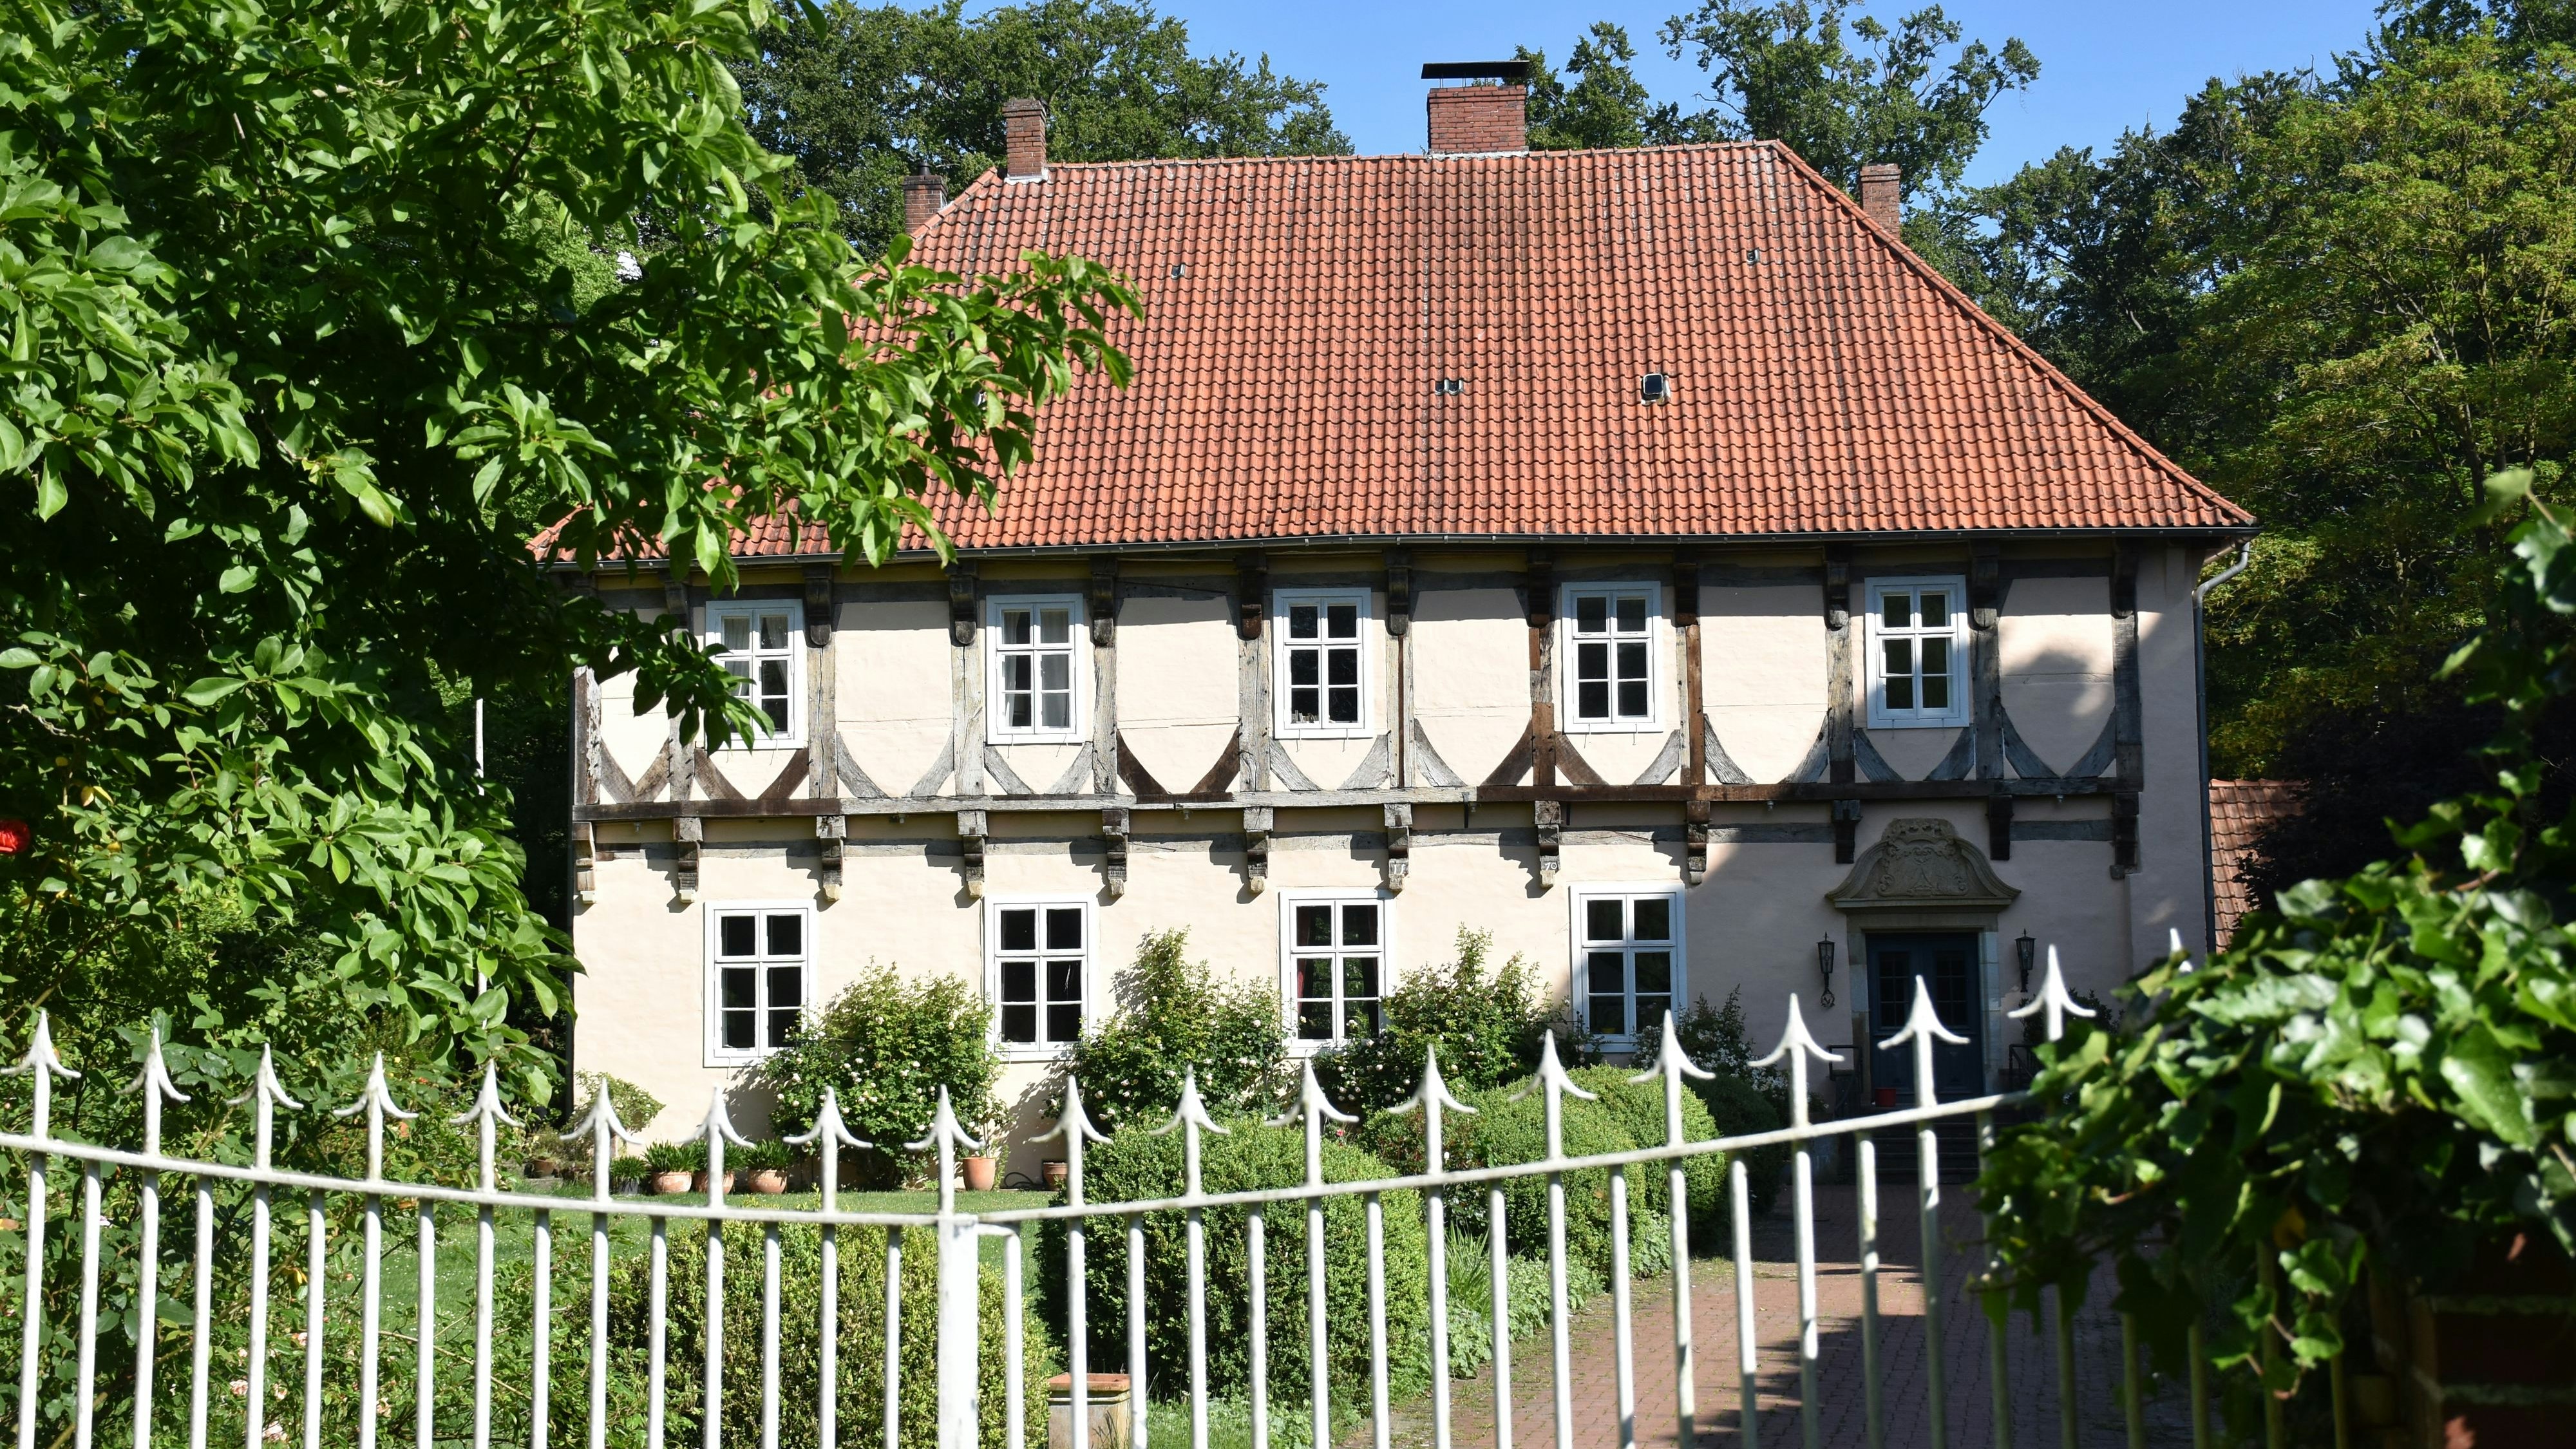 Die Burg Hopen wurde 1517 errichtet. Sie zählt zu den wichtigsten Baudenkmälern der Stadt. 2014 wurde das Herrenhaus aufwendig renoviert. Foto: Timphaus